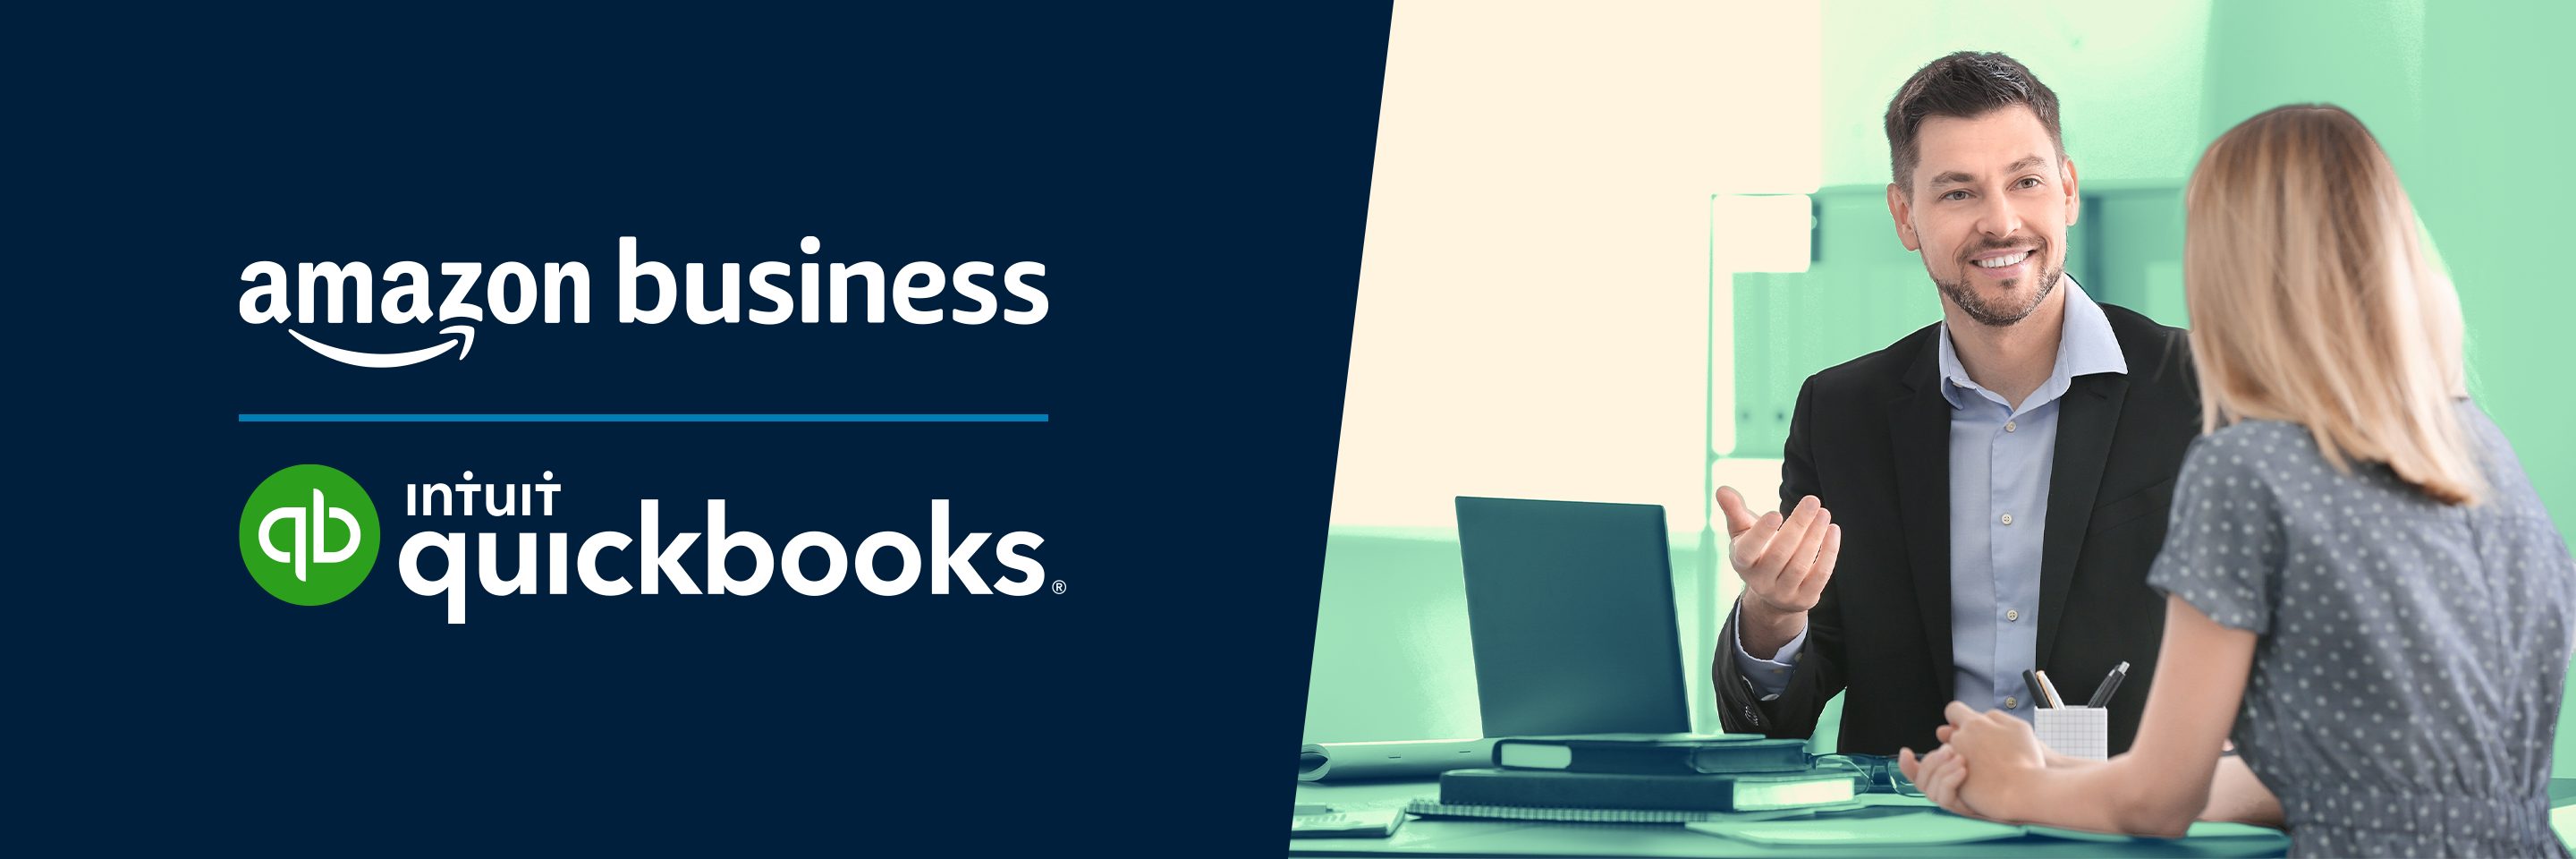 Amazon Business + QuickBooks: Cuatro expertos financieros y cómo pueden ayudar a su empresa